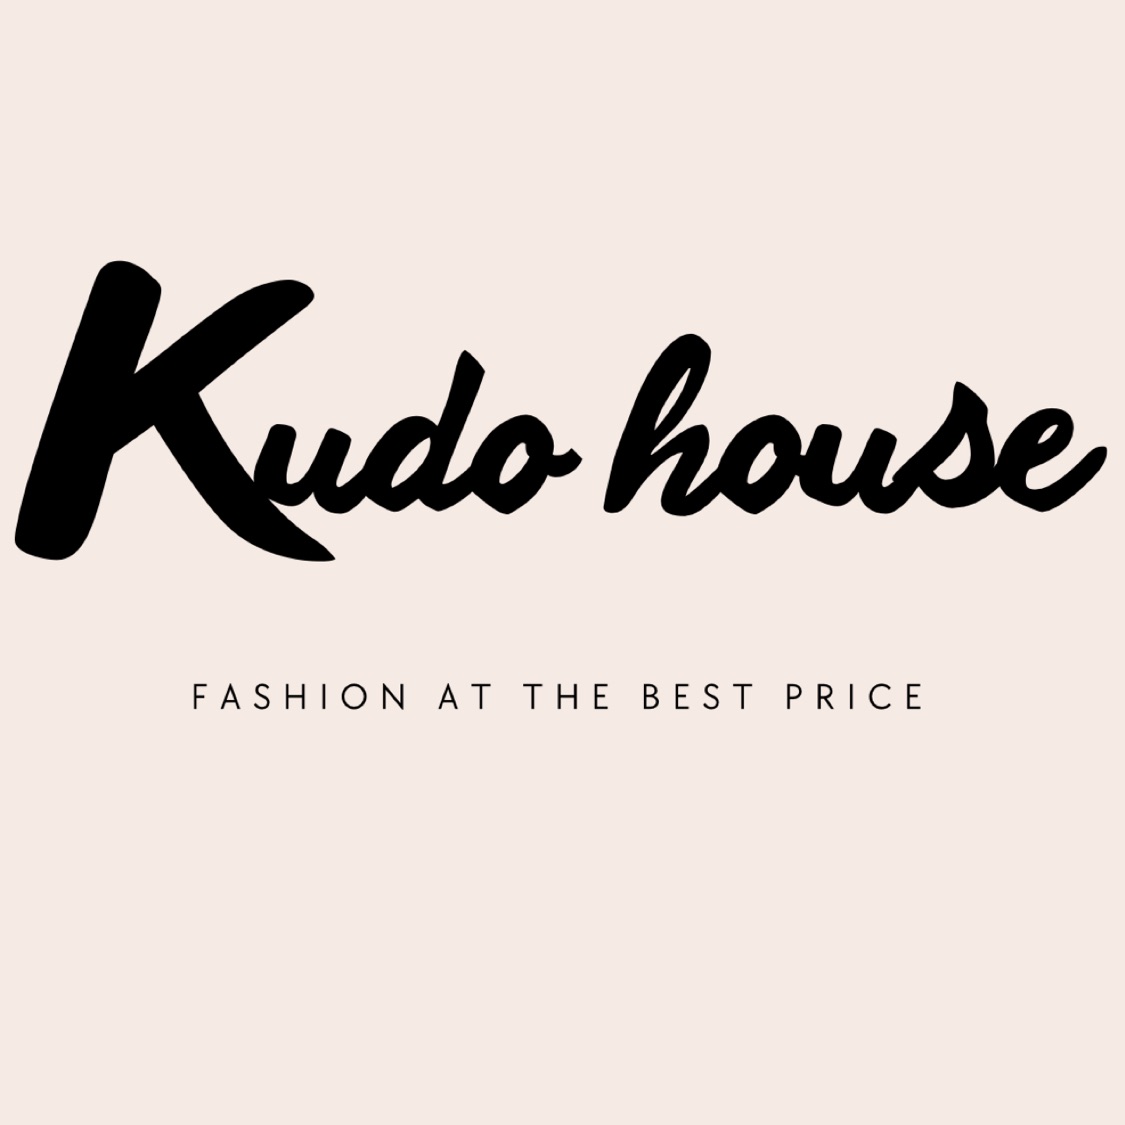 Kudo.house